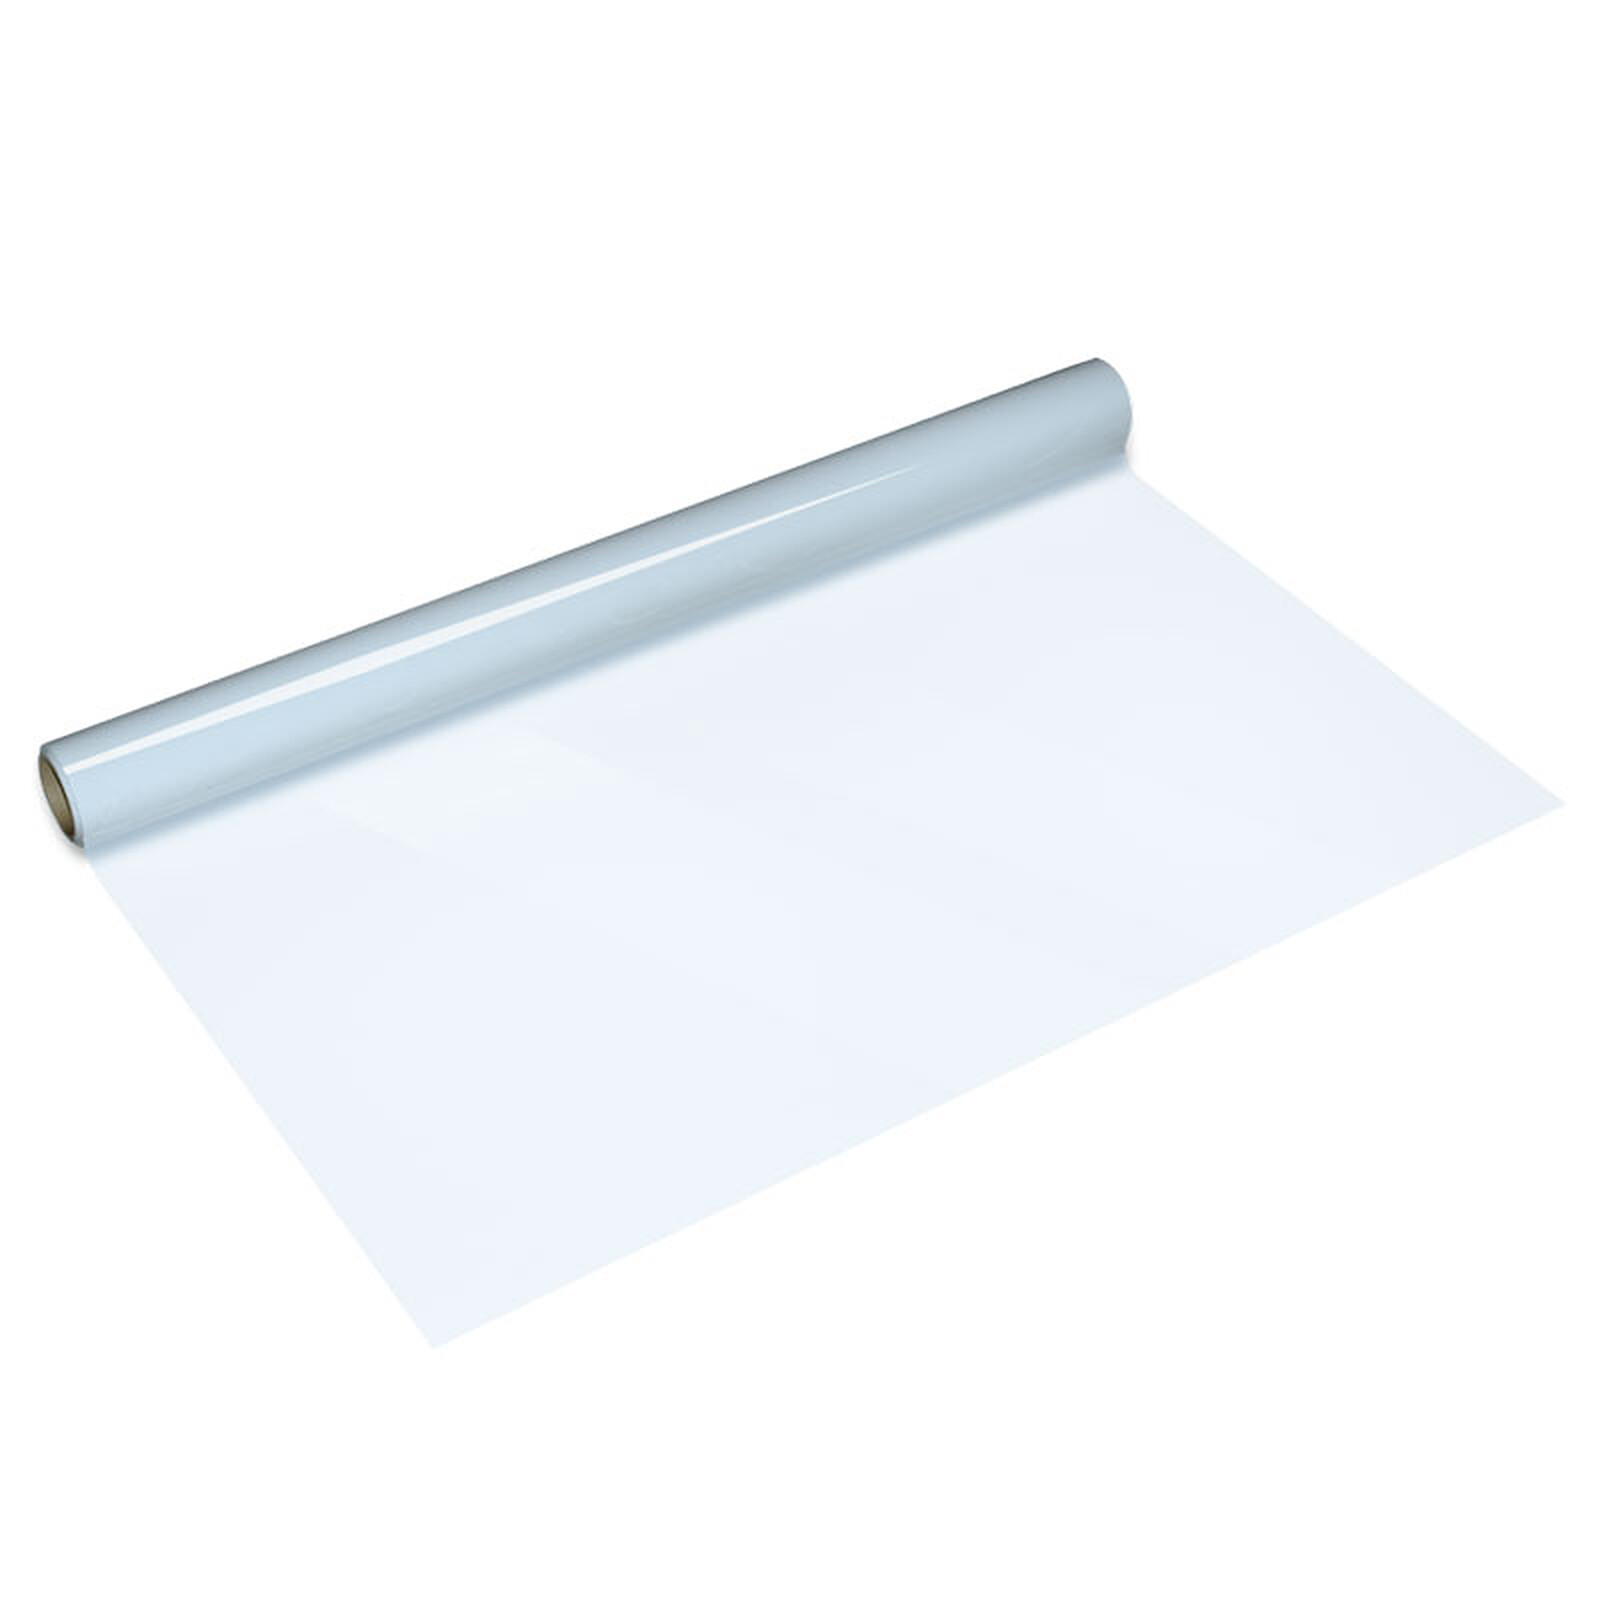 Legamaster Magic-Chart feuille transparente Paperchart 60 x 80 cm -  Accessoires tableau - Garantie 3 ans LDLC